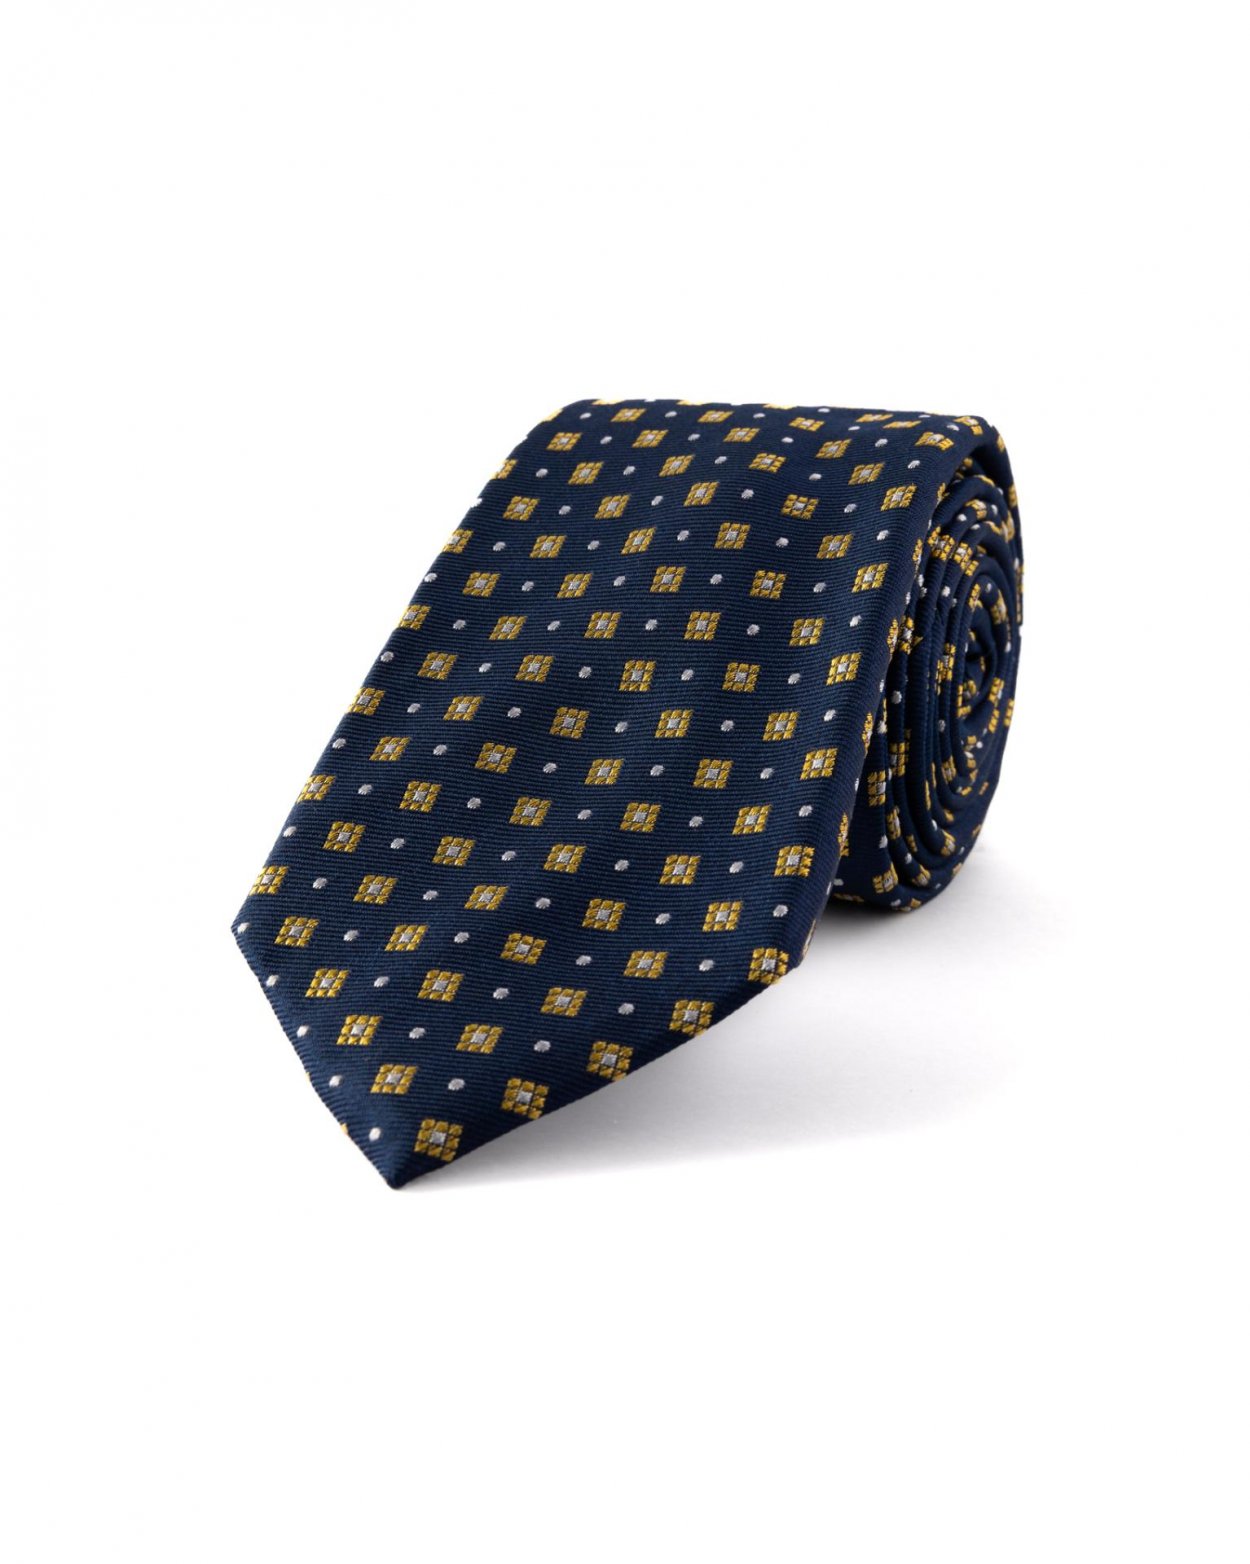 Tmavě modrá hedvábná kravata se vzorem